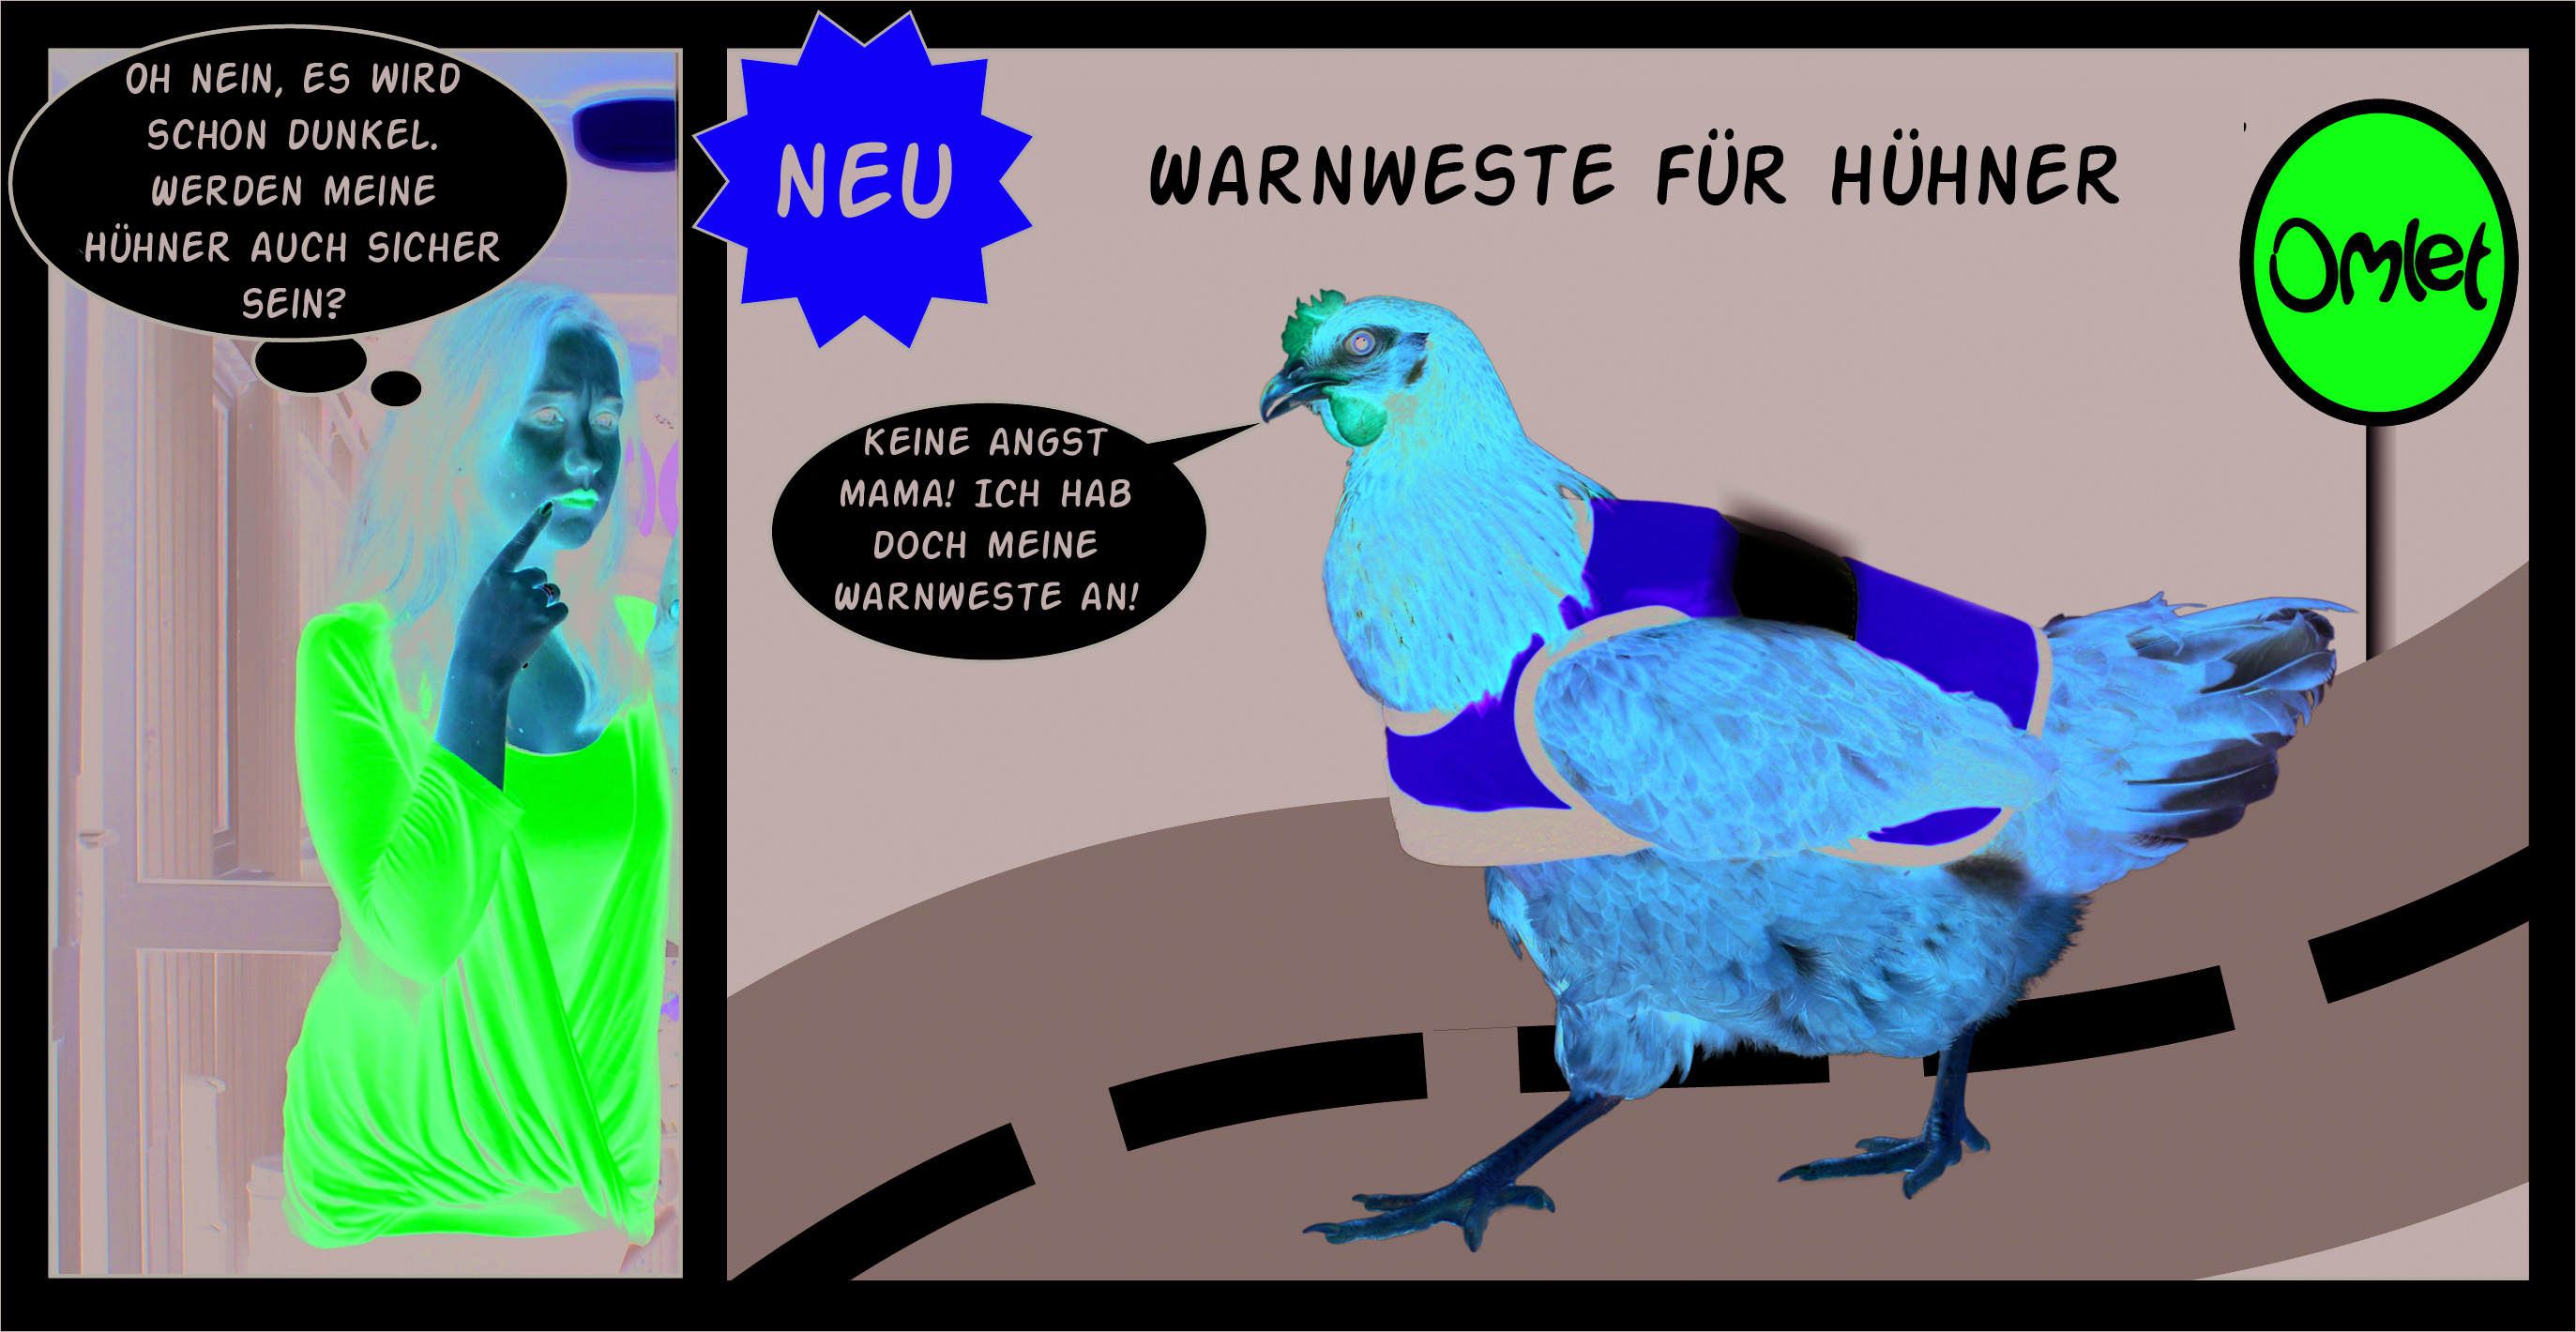 https://www.omlet.de/images/originals/warnweste_comic_1_deutsch.jpg